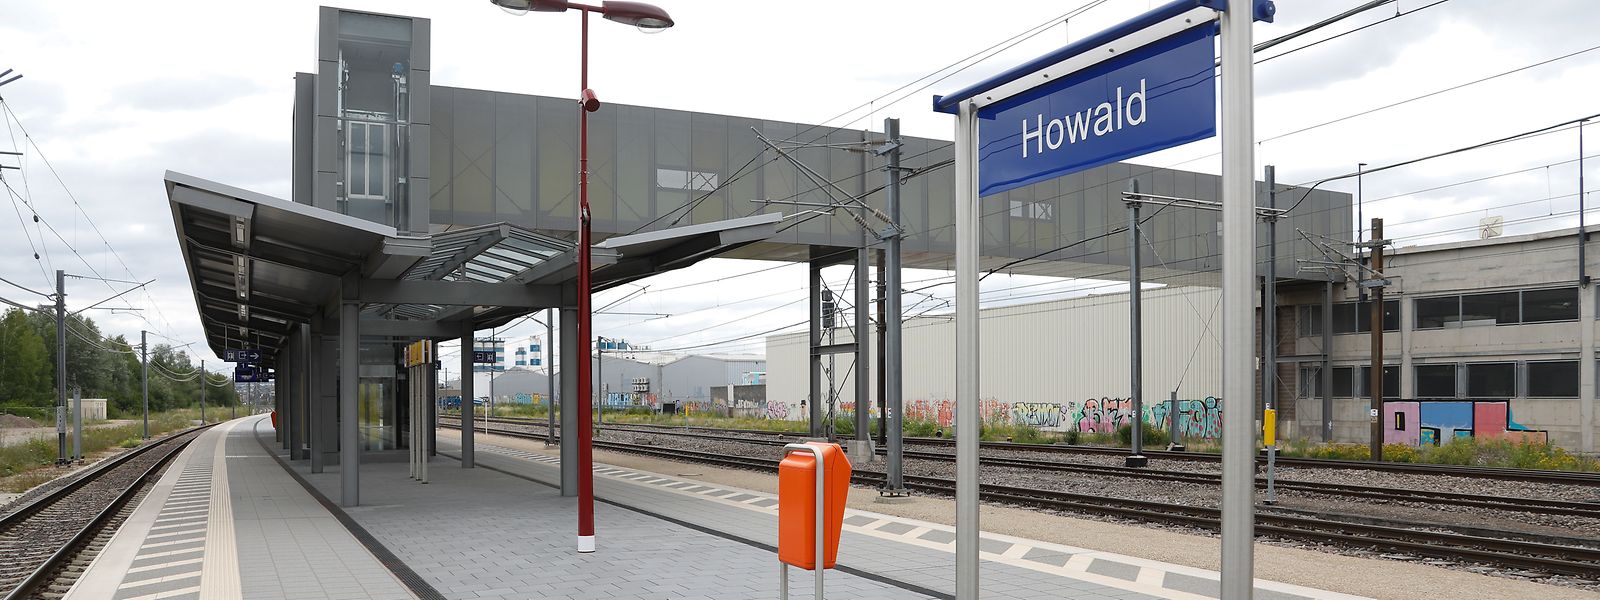 Die Gare périphérique in Howald, die seit dem 10. Dezember 2017 in Betrieb ist, ist nur ein Teil der geplanten Umsteigeplattform.